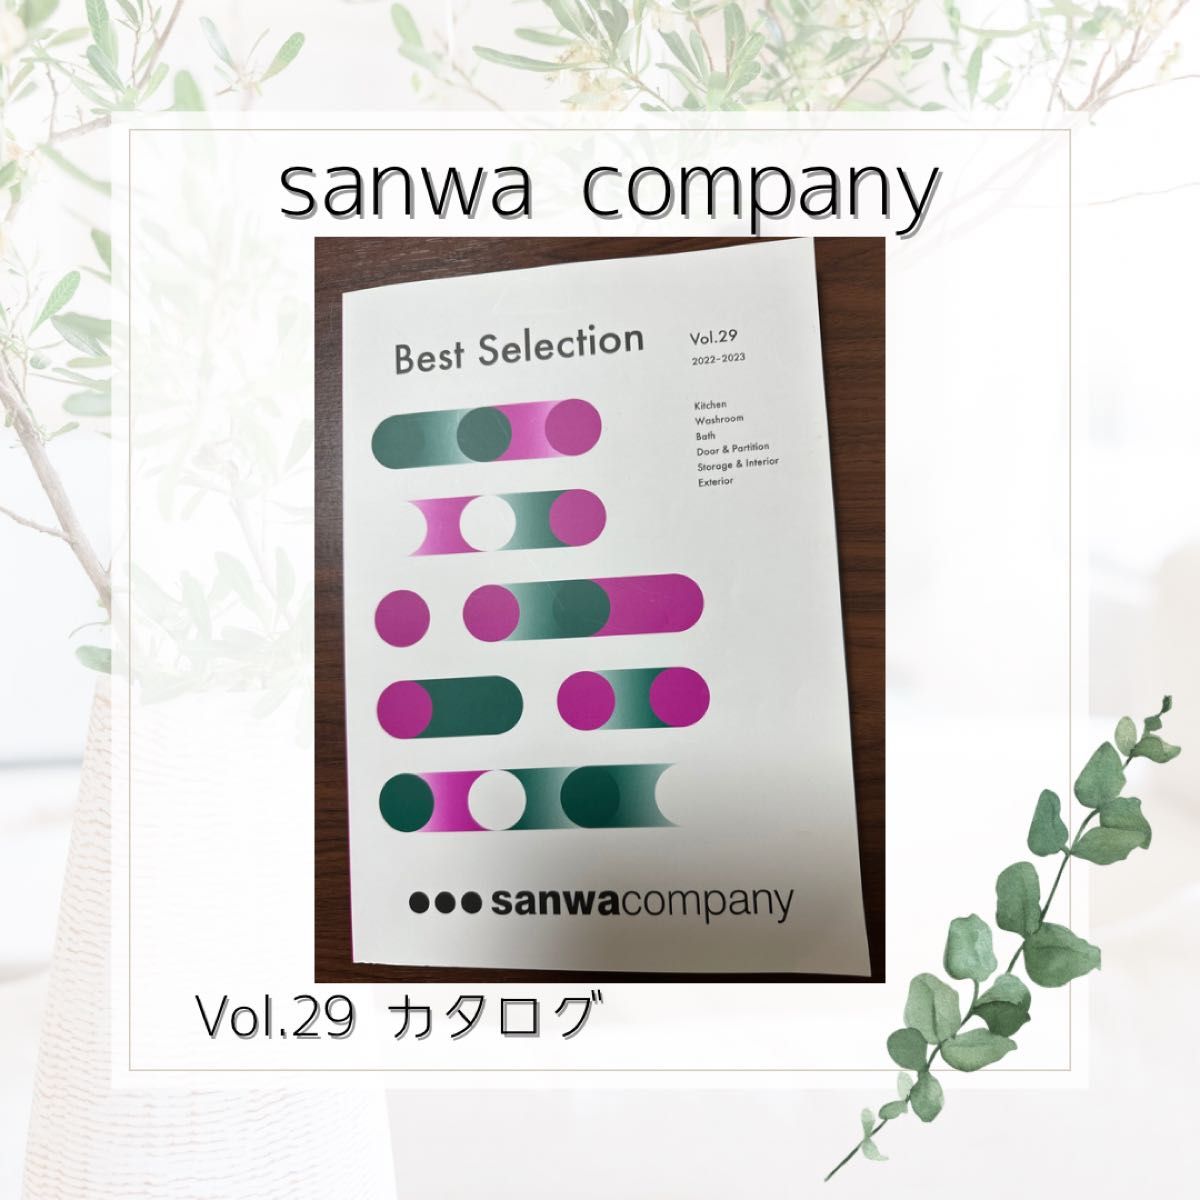 sanwa company サンワカンパニー Vol.29 カタログ